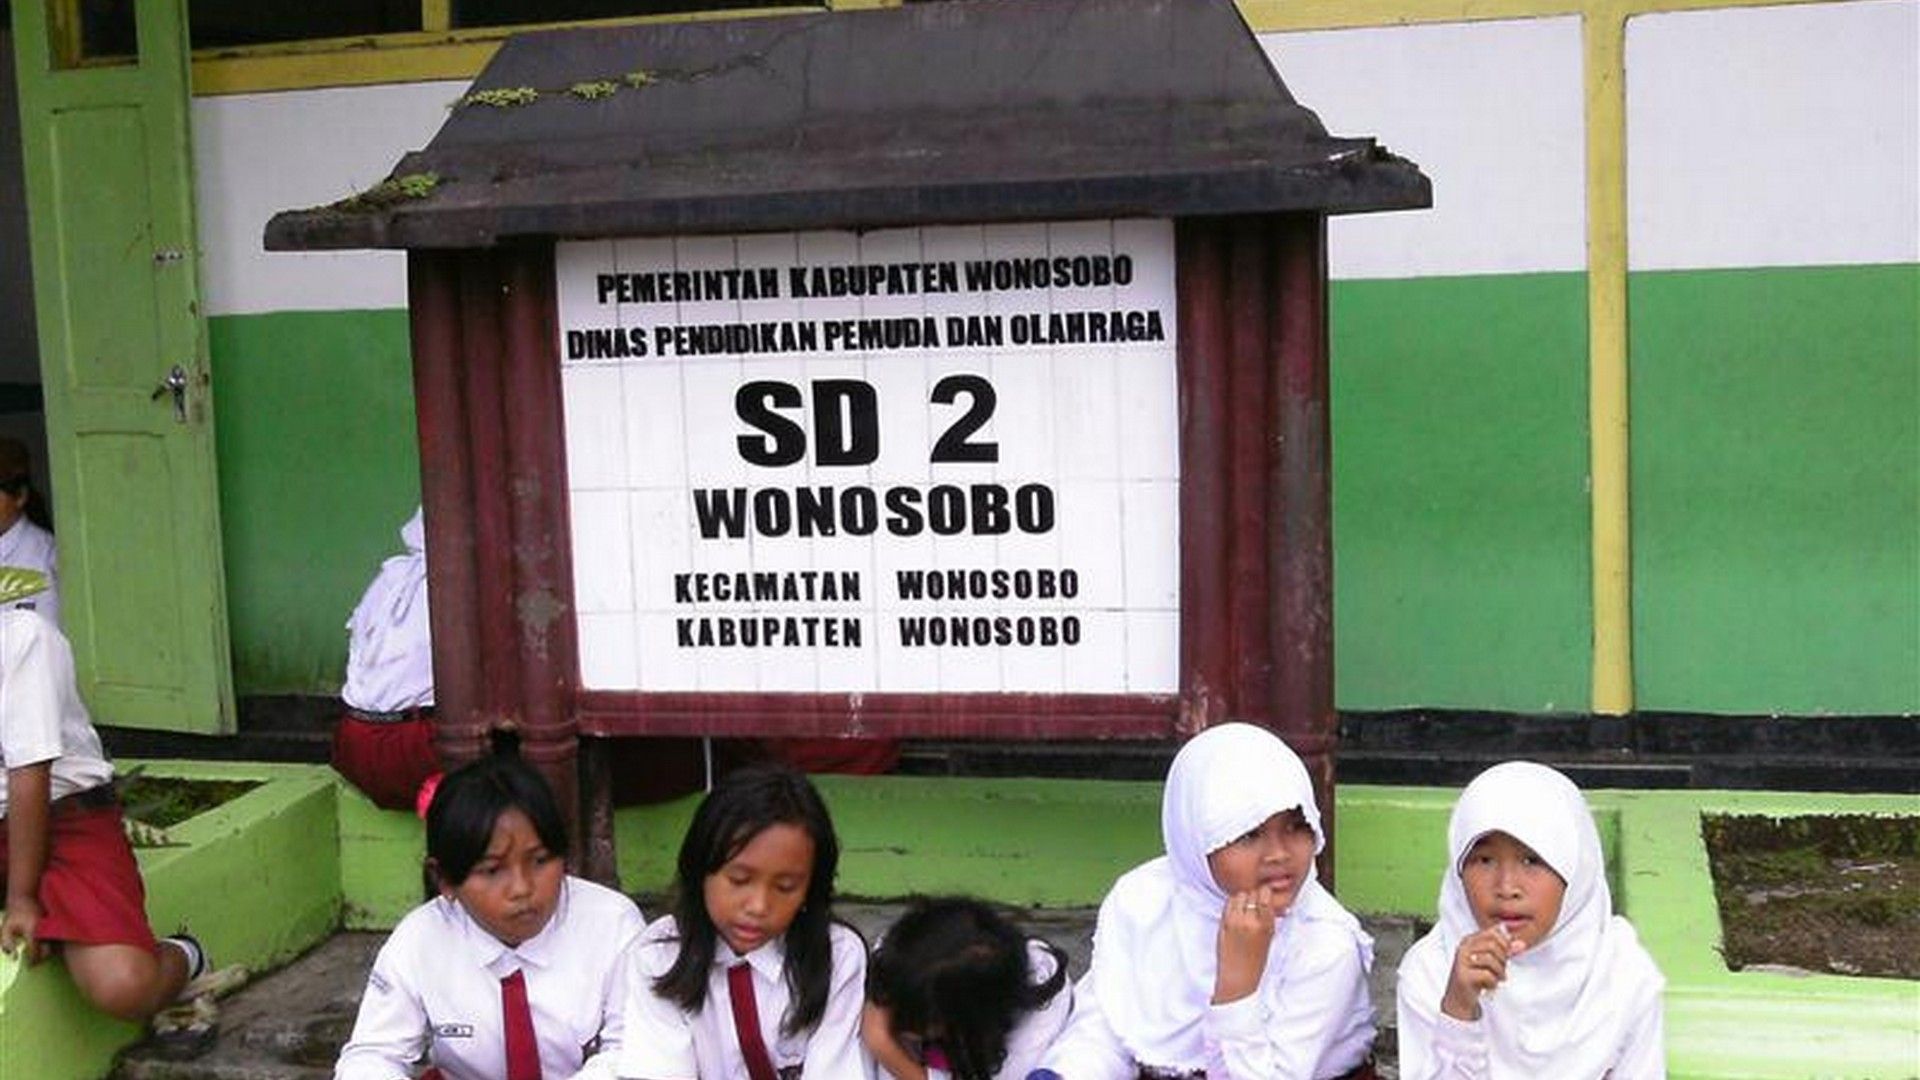 Bukan Sekedar SD Biasa! Inilah 9 SD Terbaik di Kabupaten Wonosobo dengan Program Unggulan